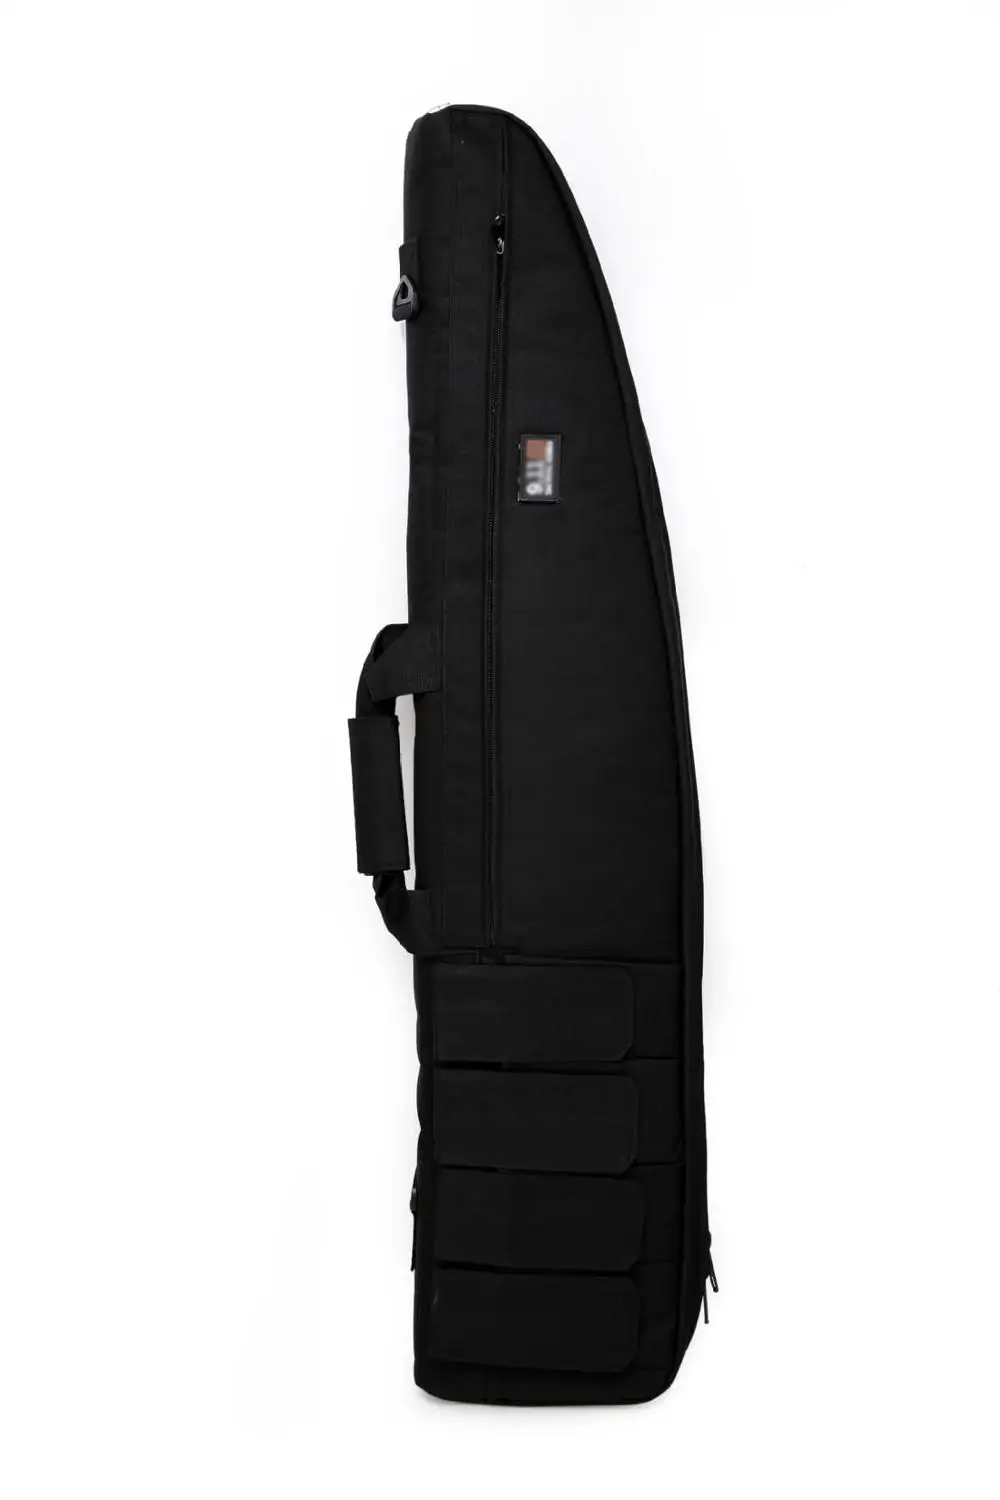 Охотничьи сумки 120 см, тактический Водонепроницаемый чехол для хранения винтовки, рюкзак, военная сумка для страйкбольного оружия, сумка для стрельбы из винтовки, чехол для Paintbal - Цвет: black